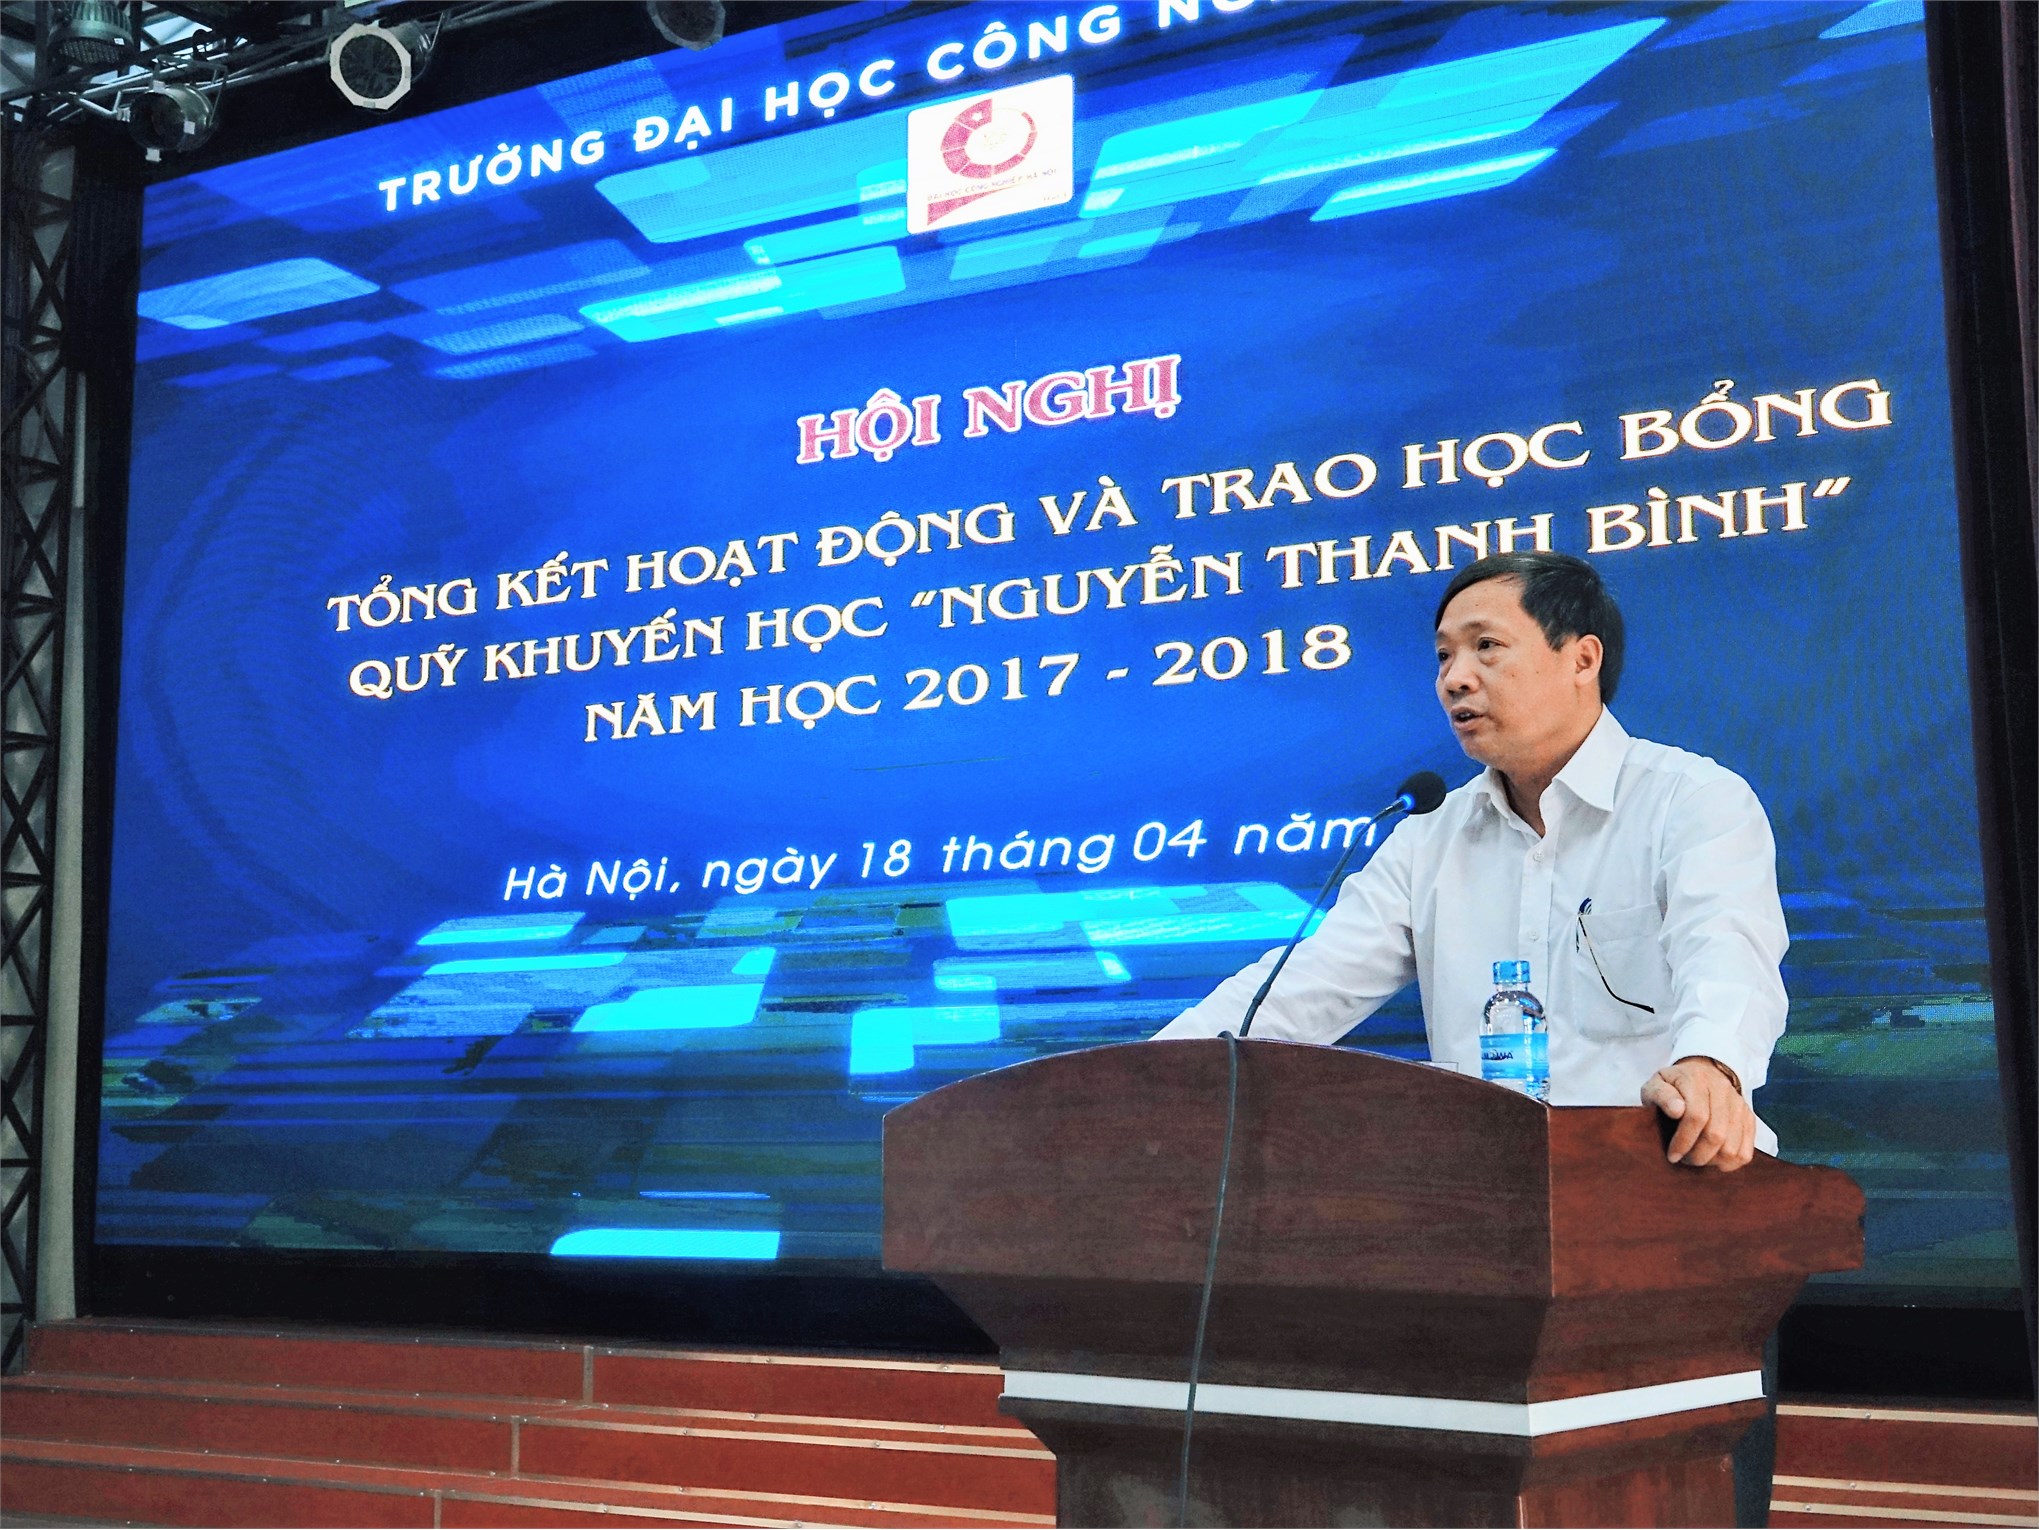 PGS.TS. Phạm Văn Bổng - Phó Bí thư Đảng ủy, Phó Hiệu trưởng nhà trường phát biểu tại buổi lễ